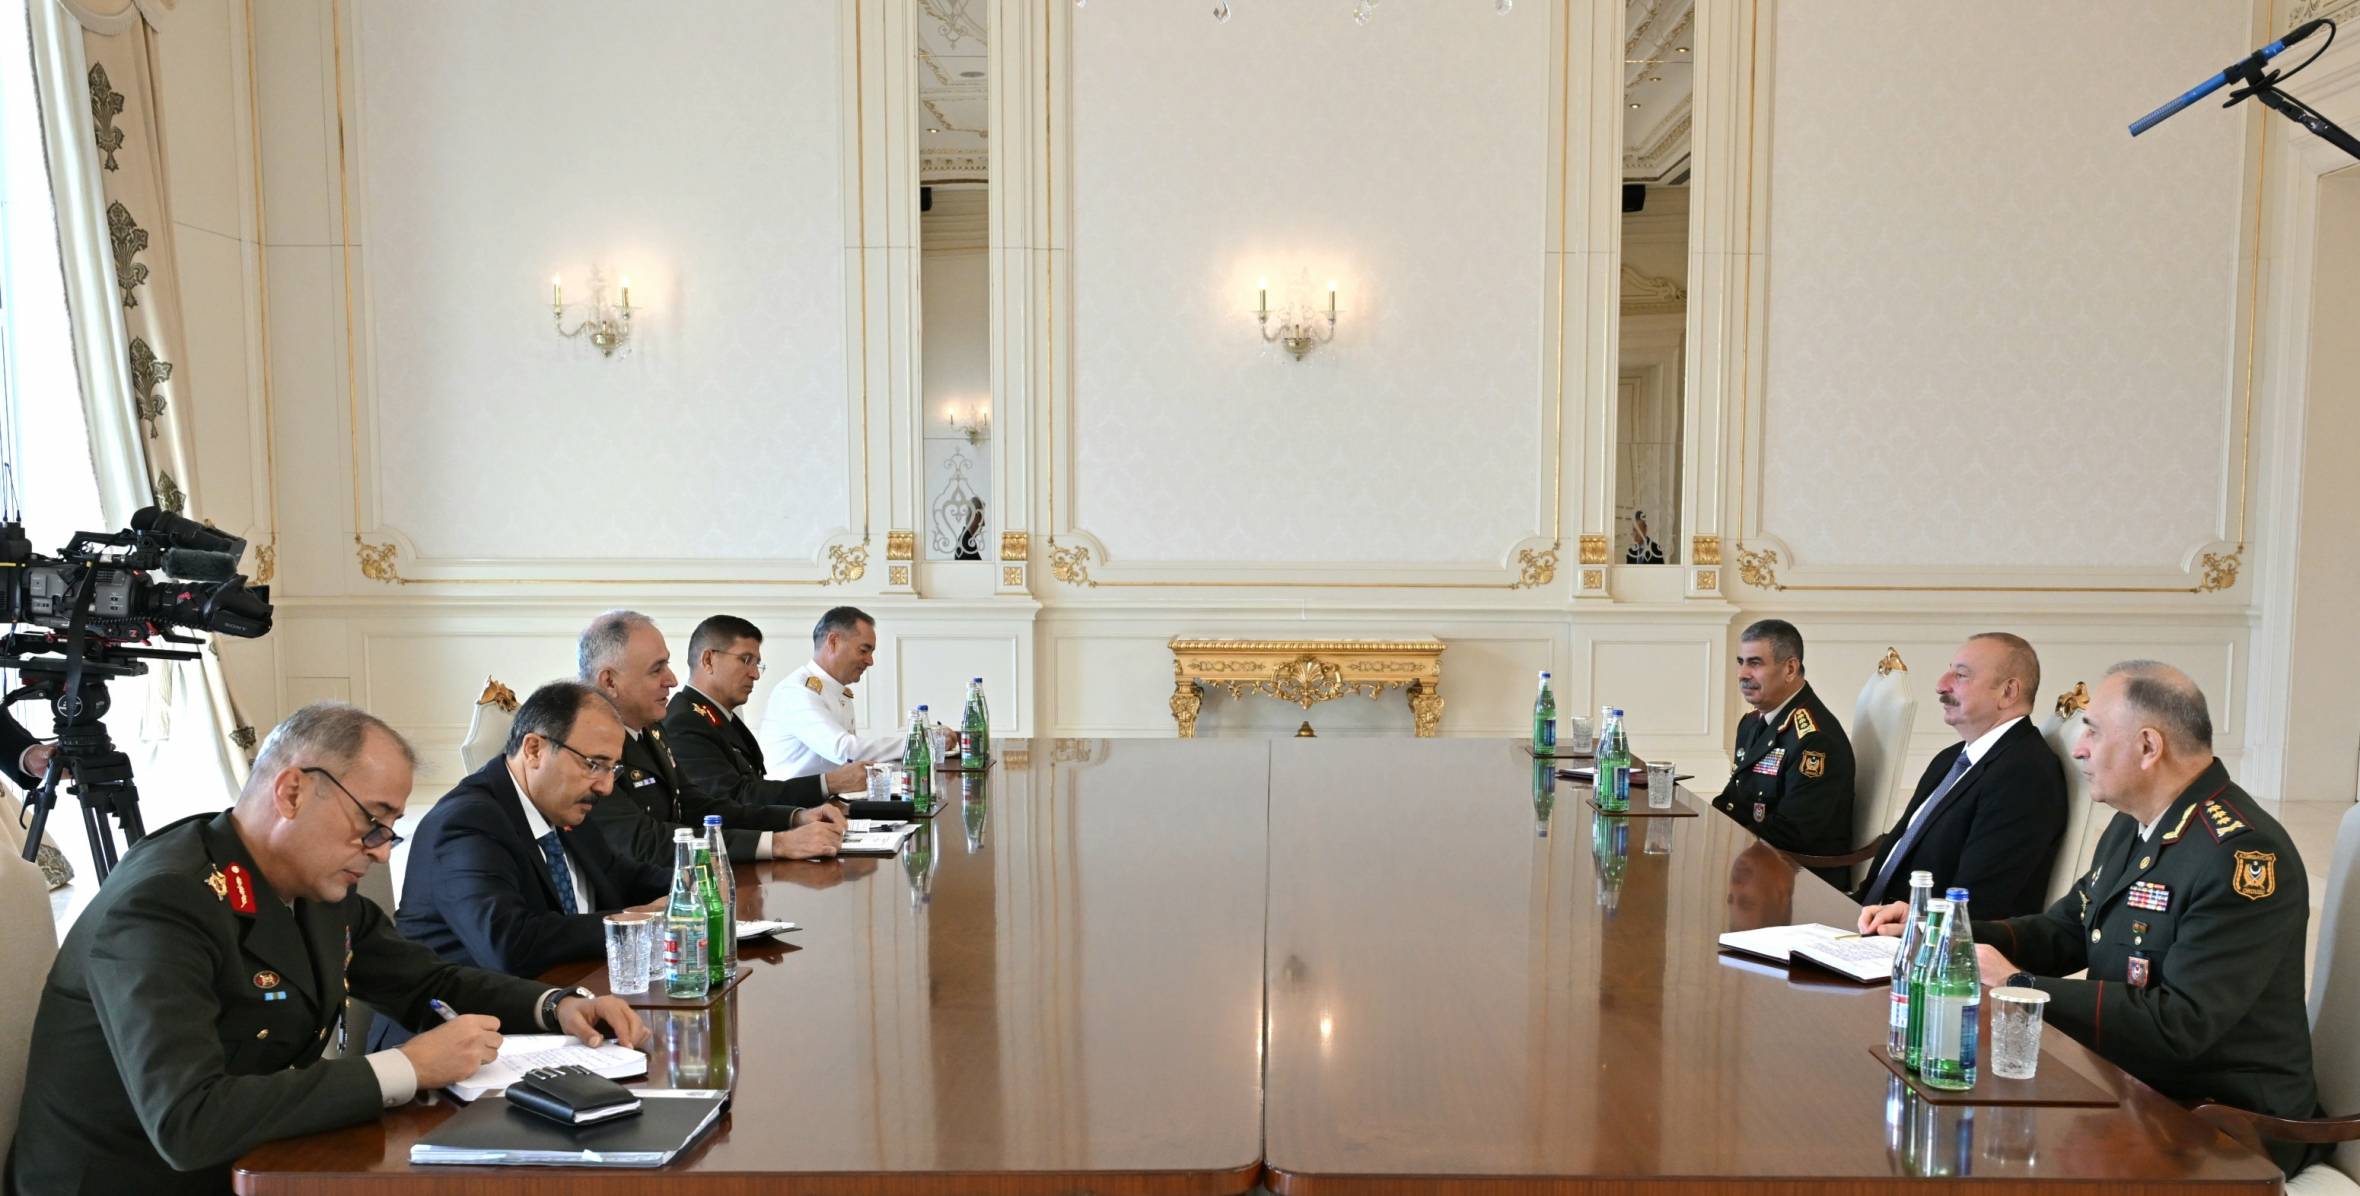 Ильхам Алиев принял начальника Генерального штаба Вооруженных сил Турции